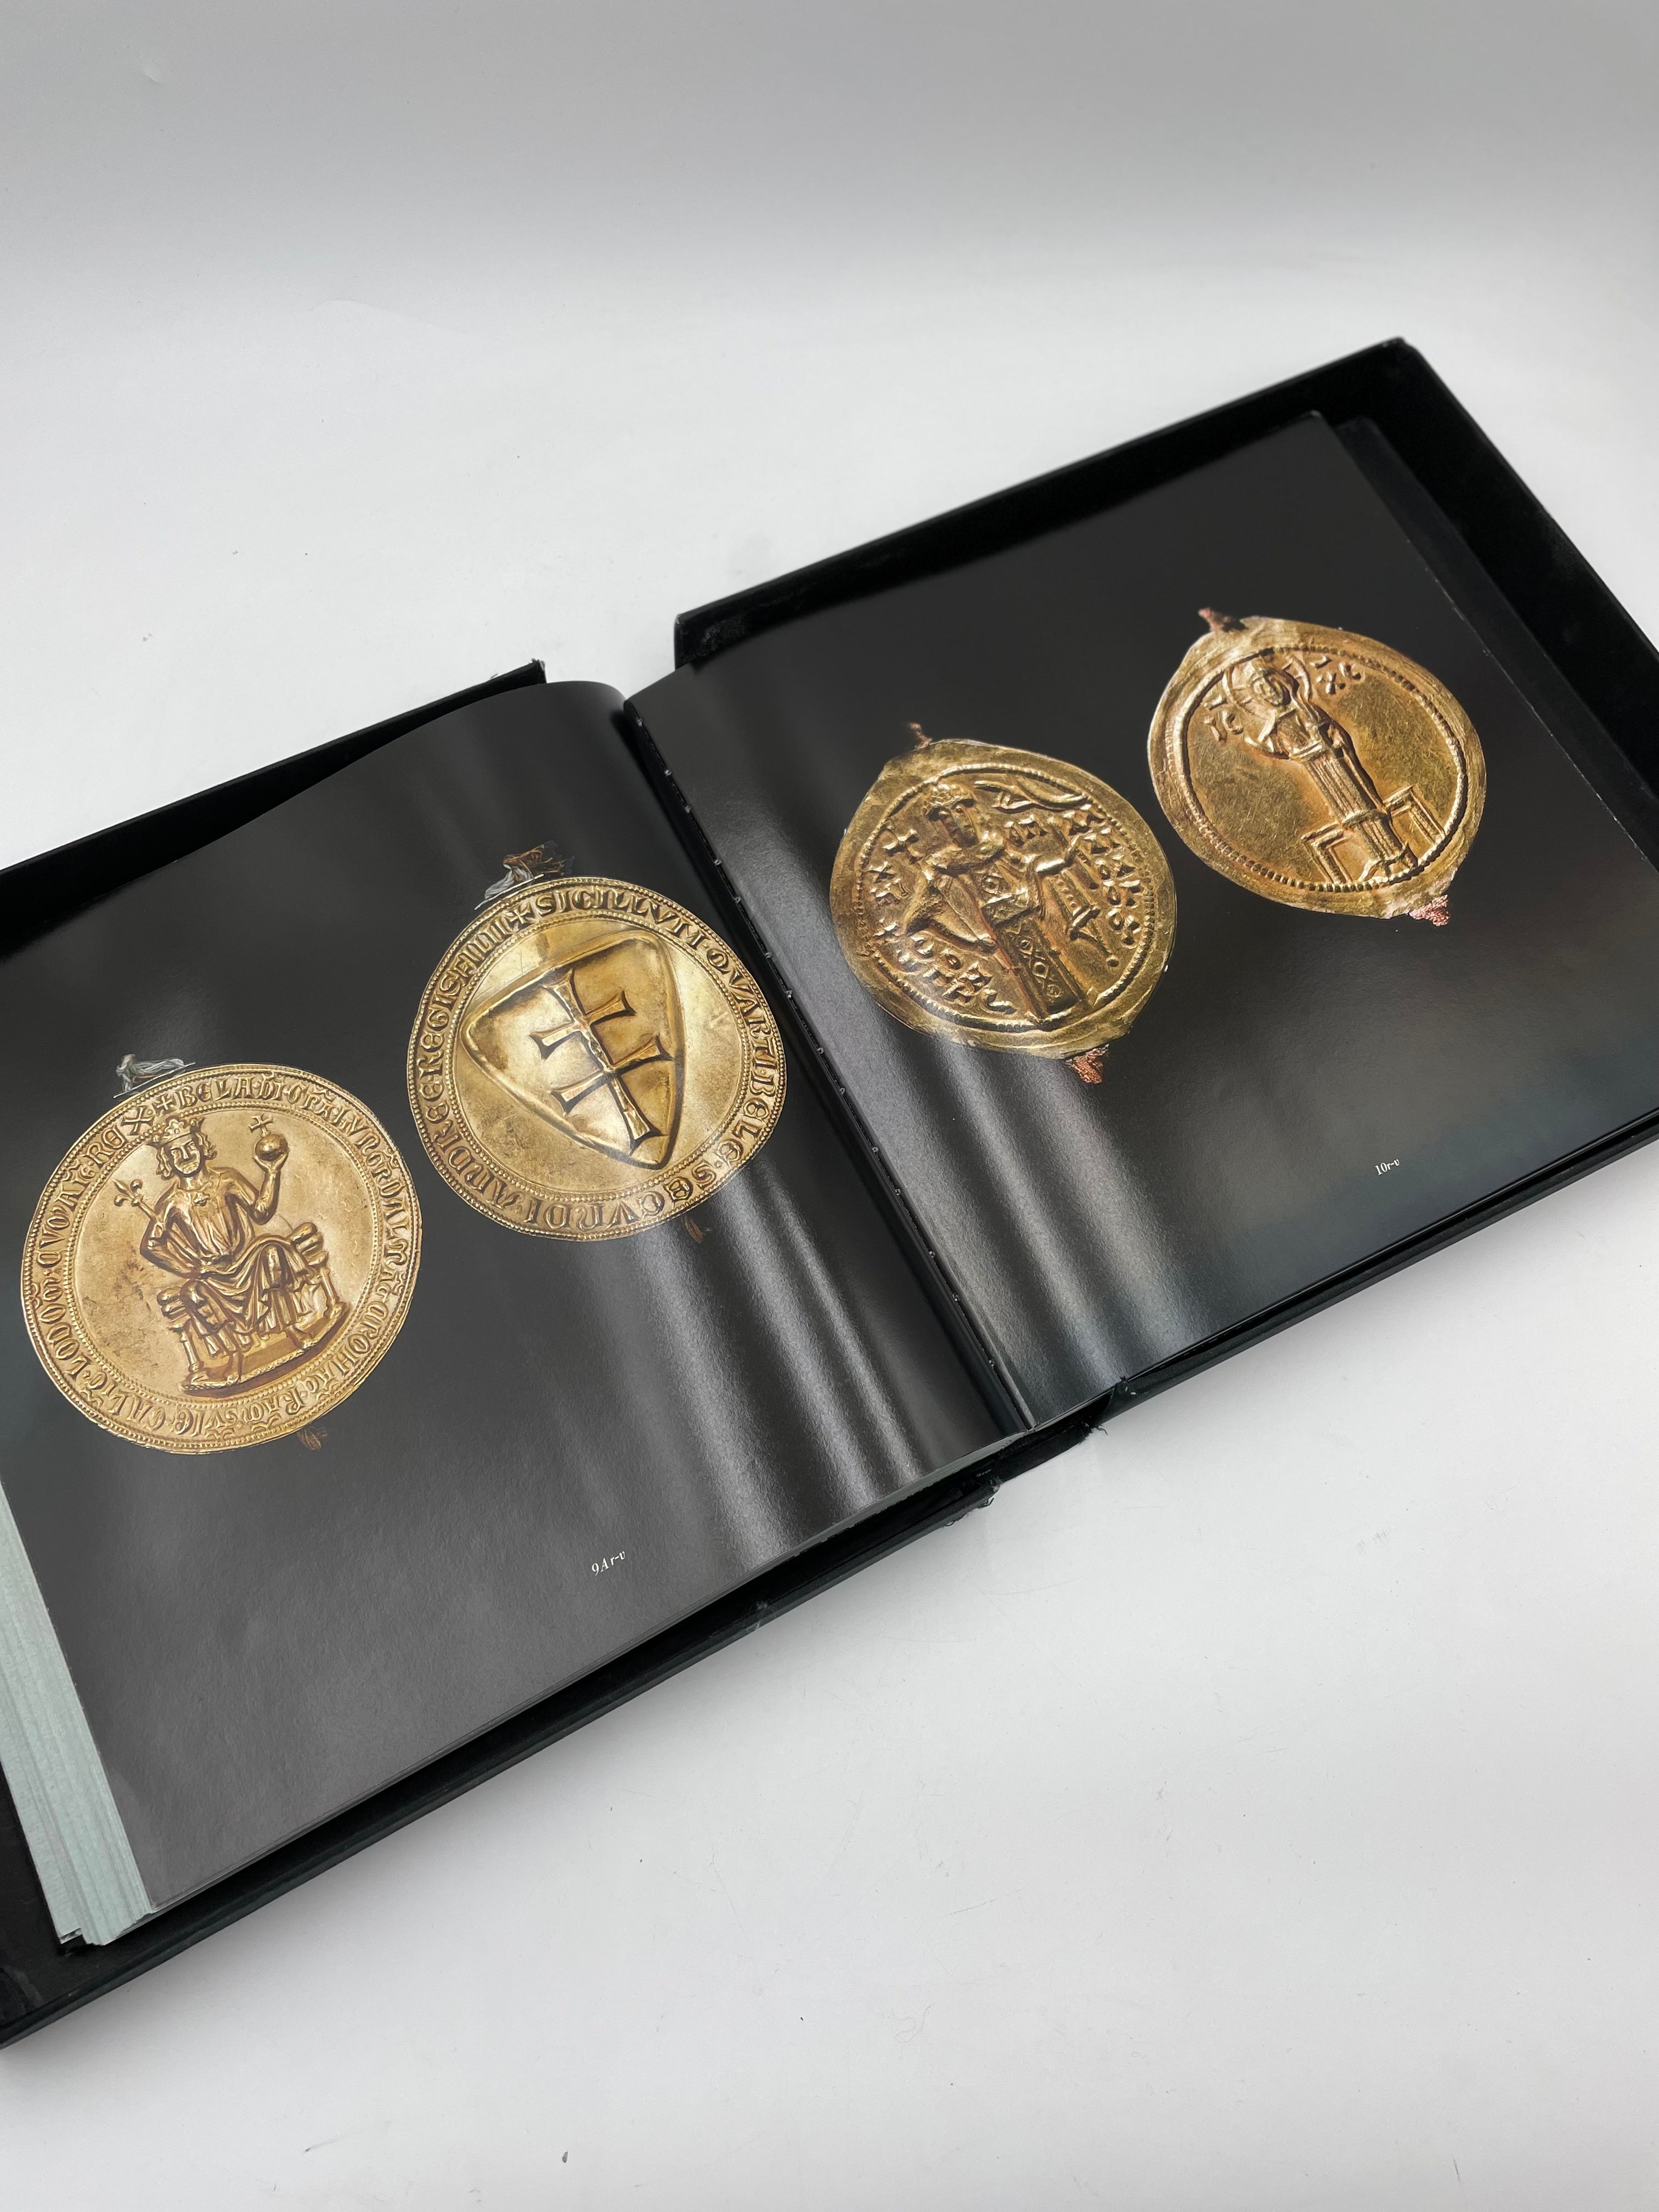 I sigilli d'oro dell'Archivio Segreto Vaticano Published by Franco Maria Ricci